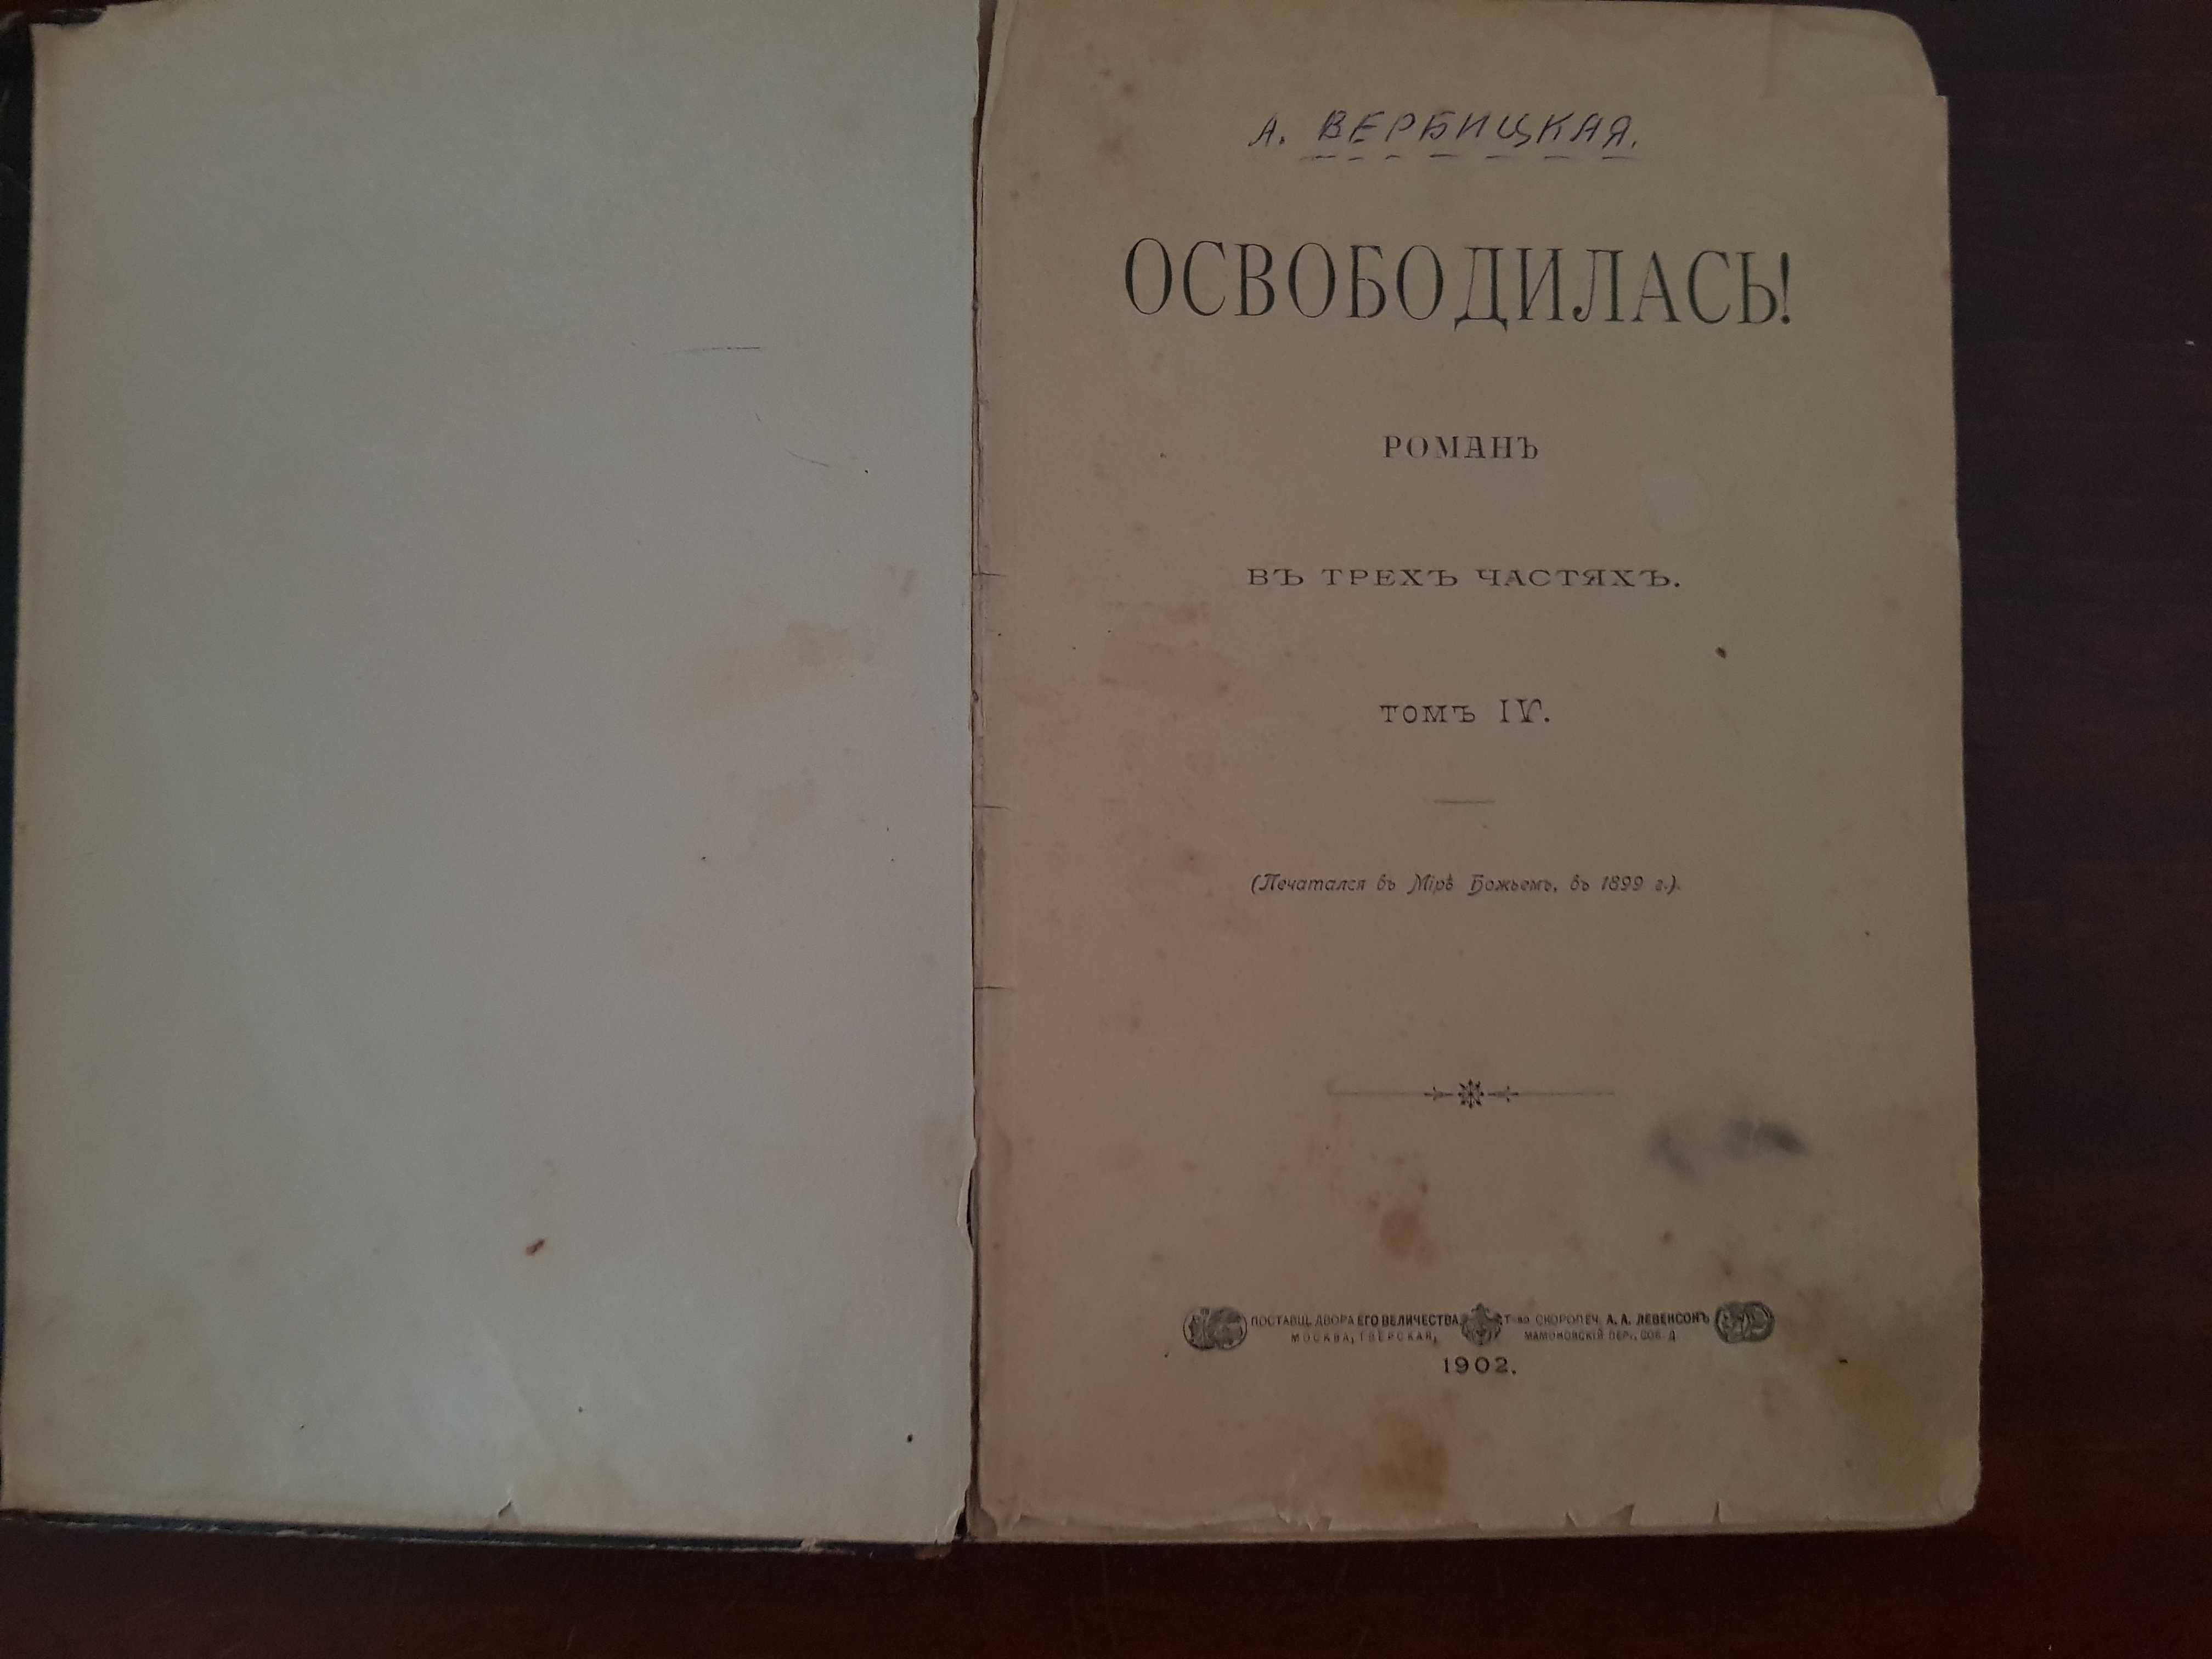 А Вербицкая "Освободилась" роман в 3-х частях, том 4, 1902 год.